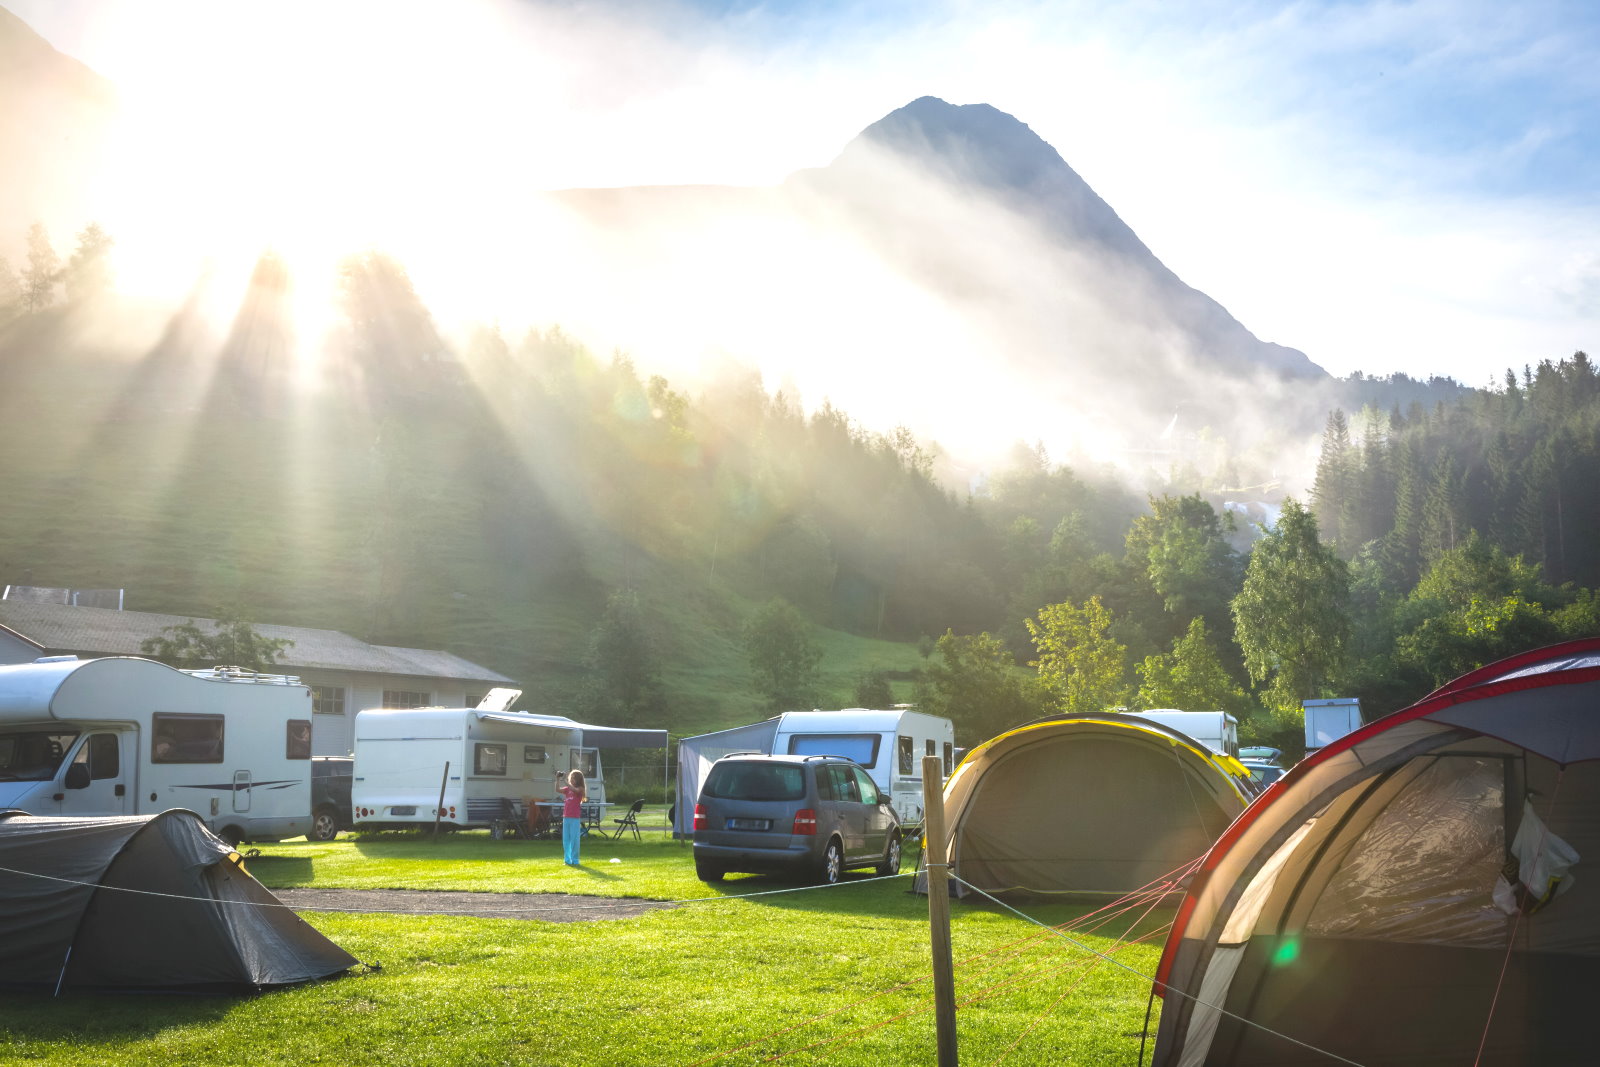 Campingplatz mit Zelten, Stellplatz mit Wohnmobilen, Sonnenstrahlen beim Sonnenaufgang